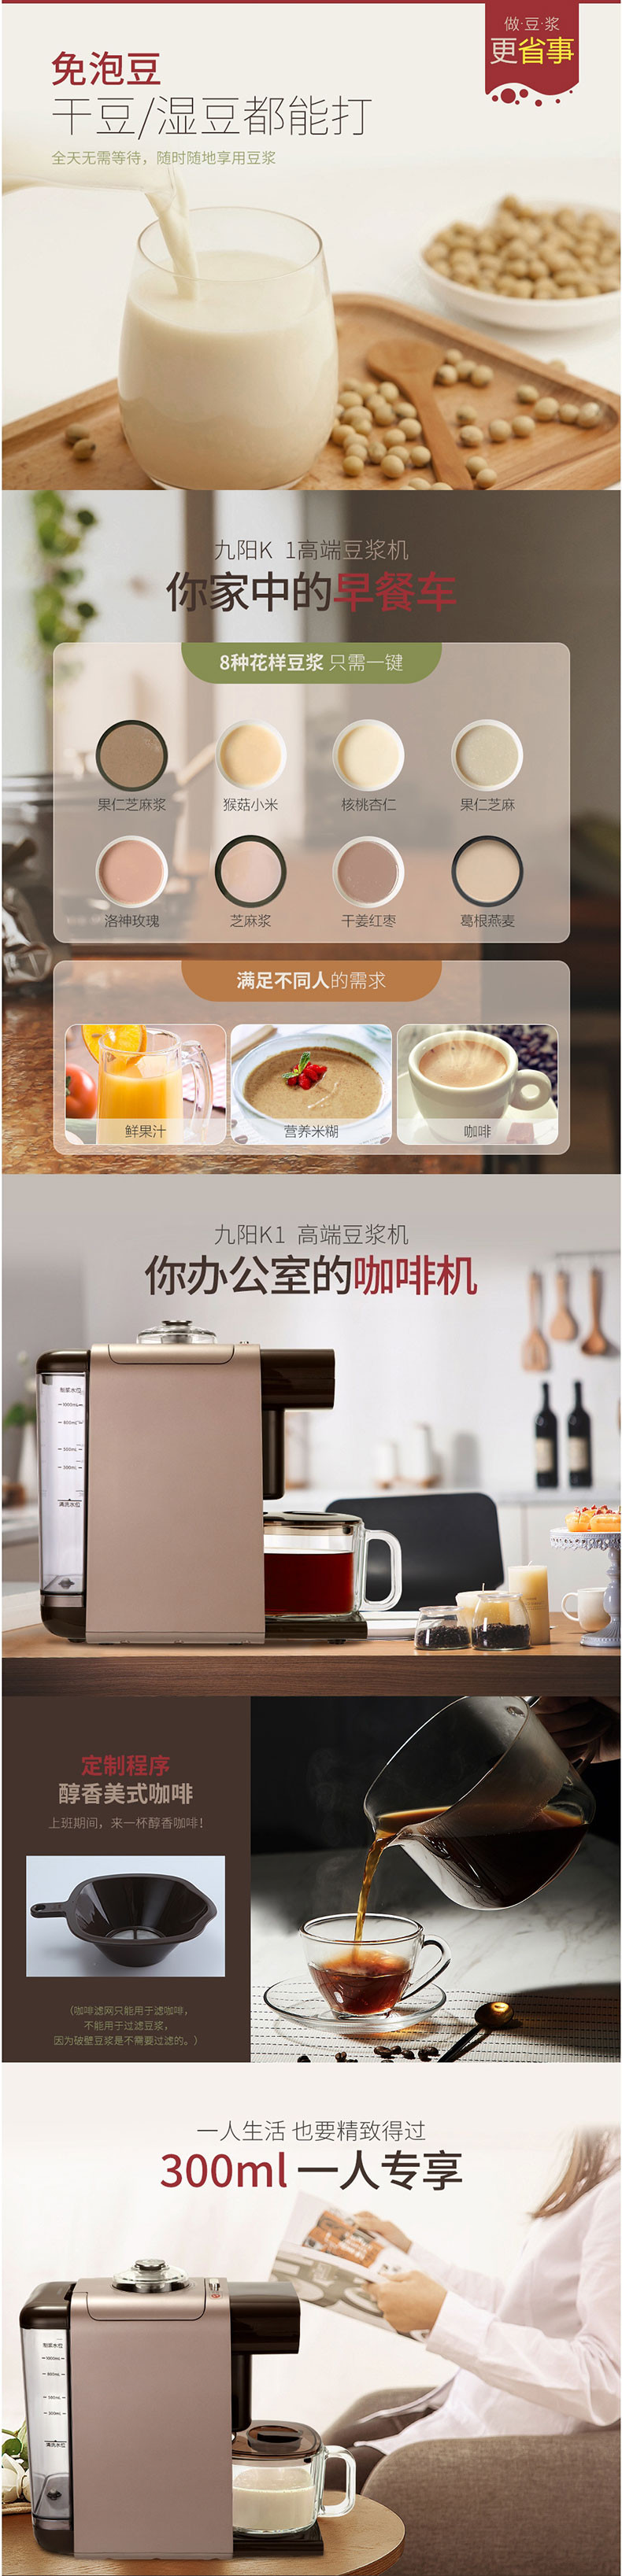 九阳/Joyoung 豆浆机K1 家用全自动咖啡机 不用手洗破壁豆浆机DJ10R-K1咖啡色